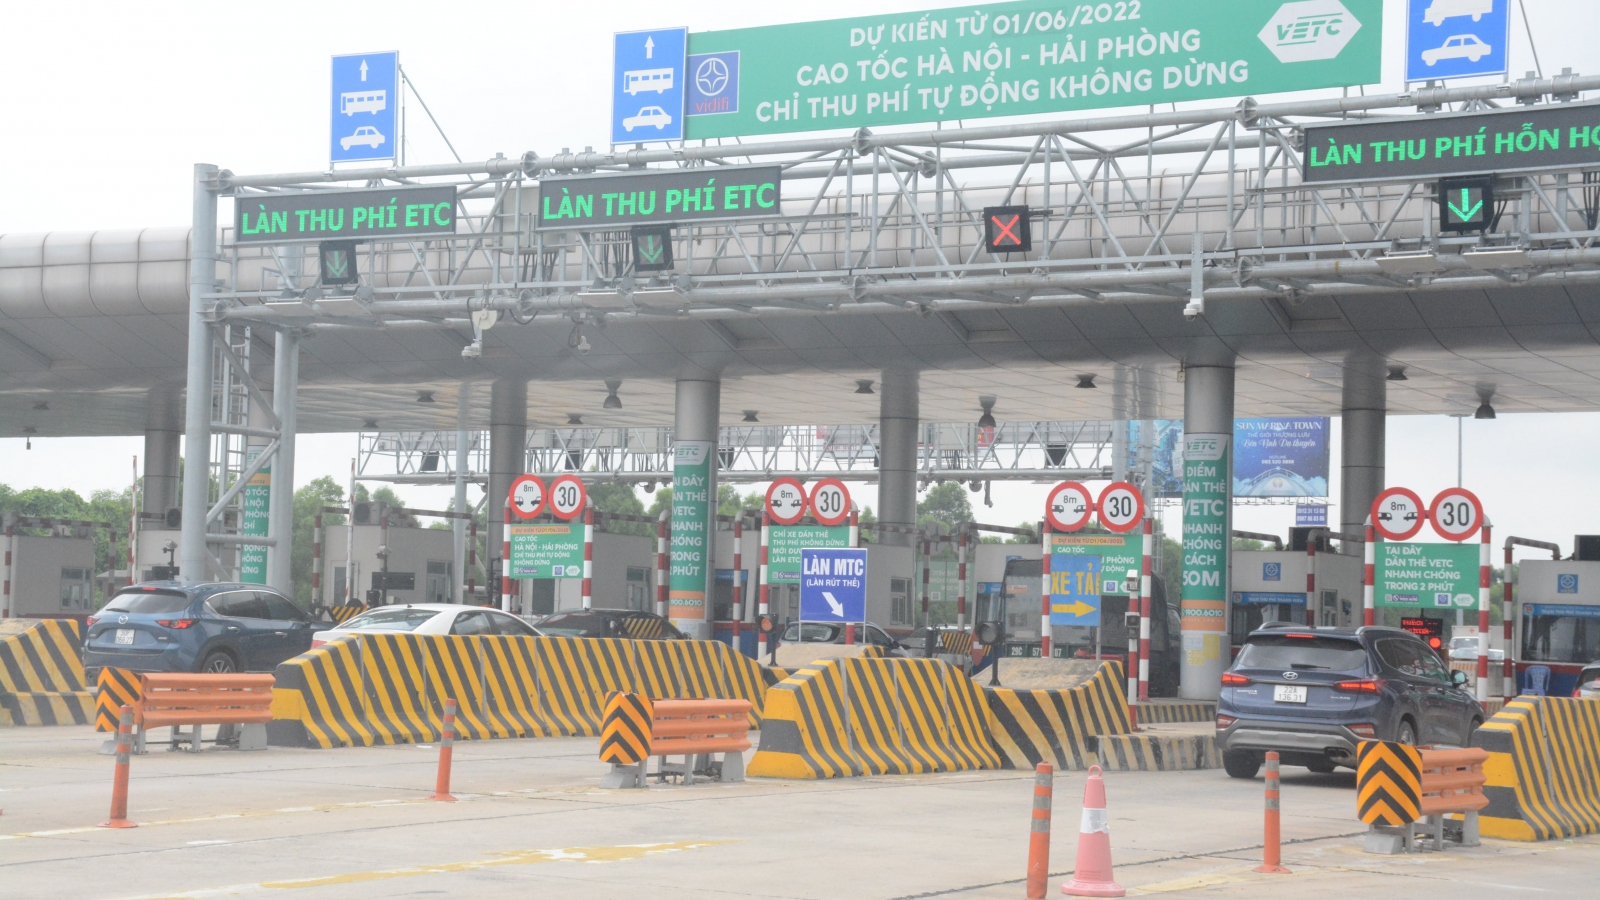 Cao tốc Hà Nội - Hải Phòng chỉ thu phí tự động không dừng: Bước đầu suôn sẻ